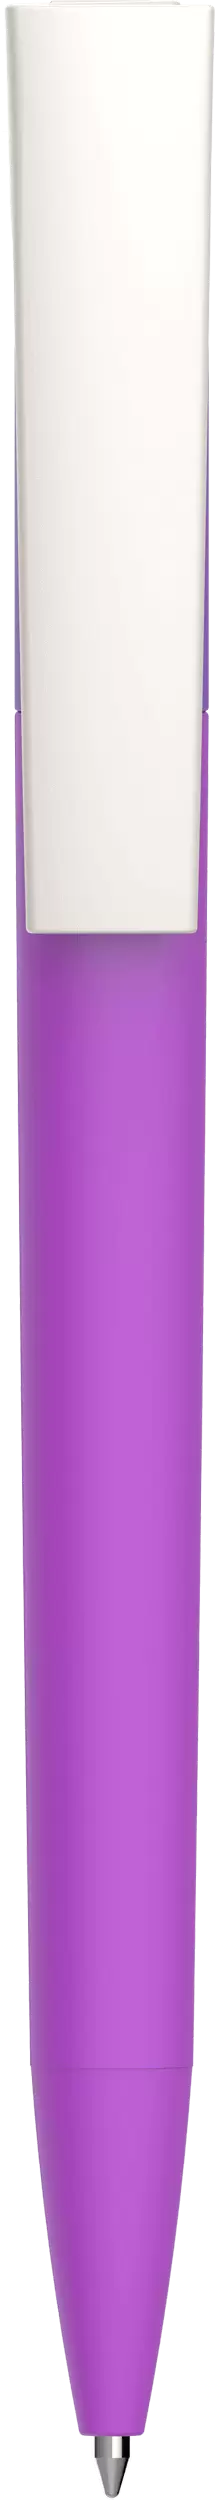 Ручка ZETA SOFT Фиолетовая (сиреневая) 1010-24